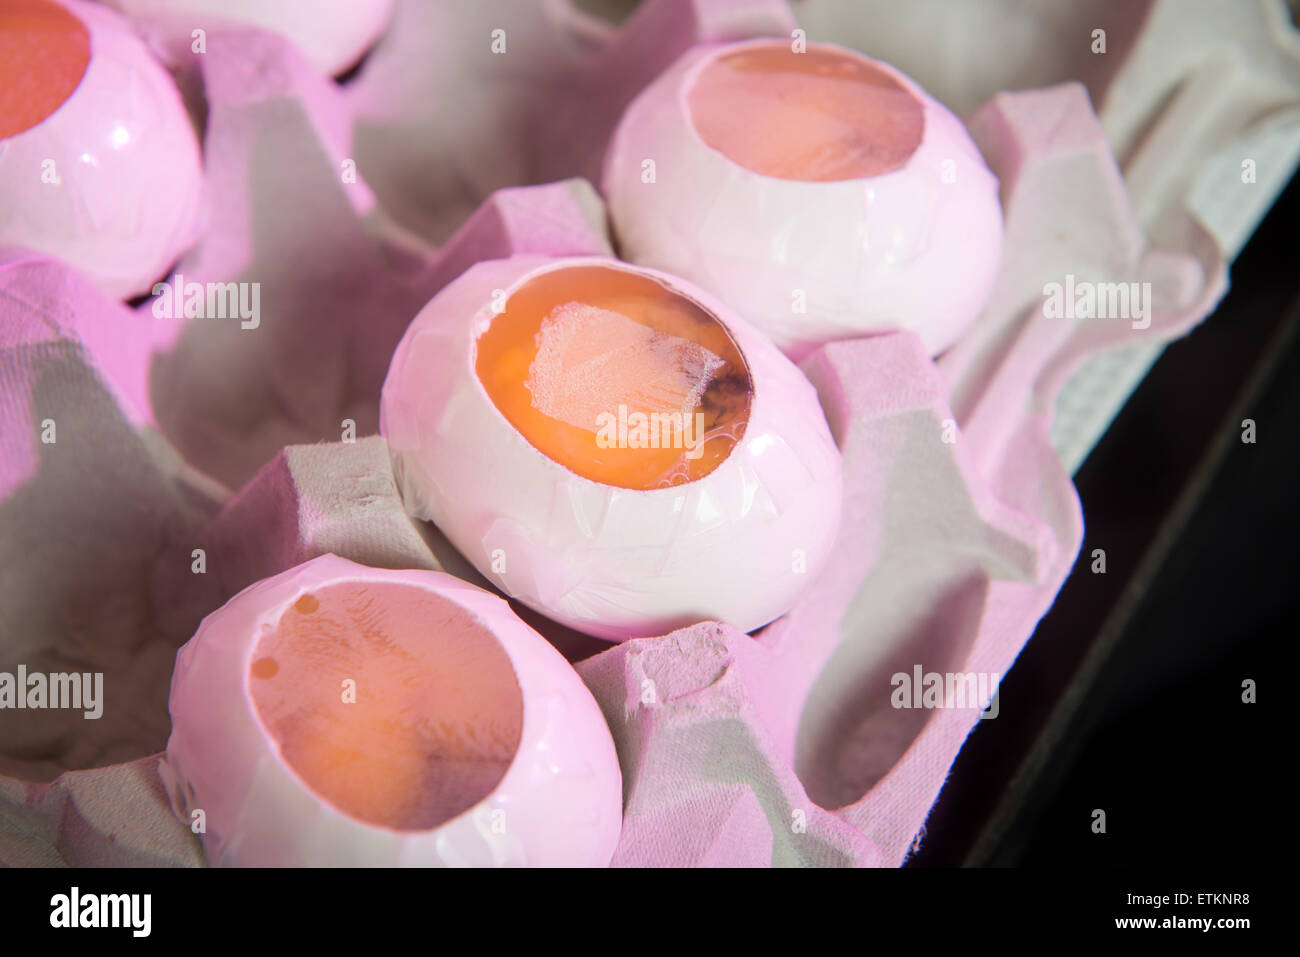 Coperte le uova per la ricerca sugli embrioni in College Park, Maryland, Stati Uniti d'America Foto Stock